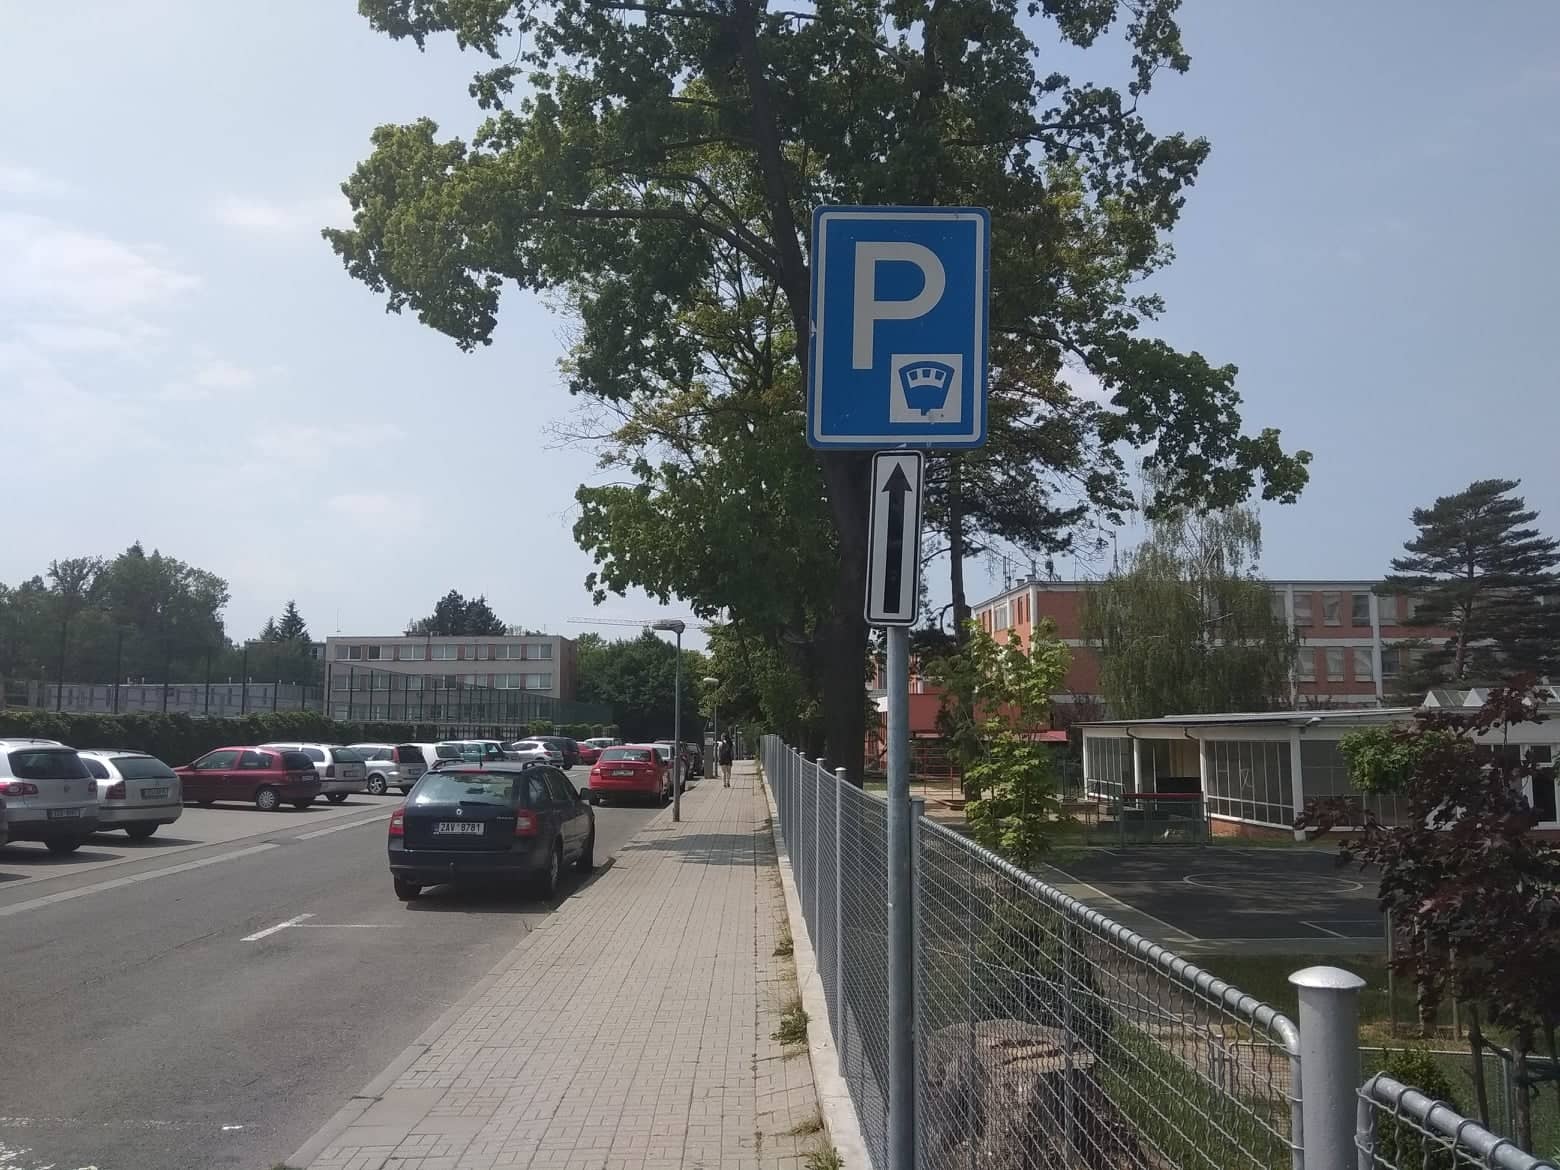 Kde zaparkovat zdarma ve Zlíně?